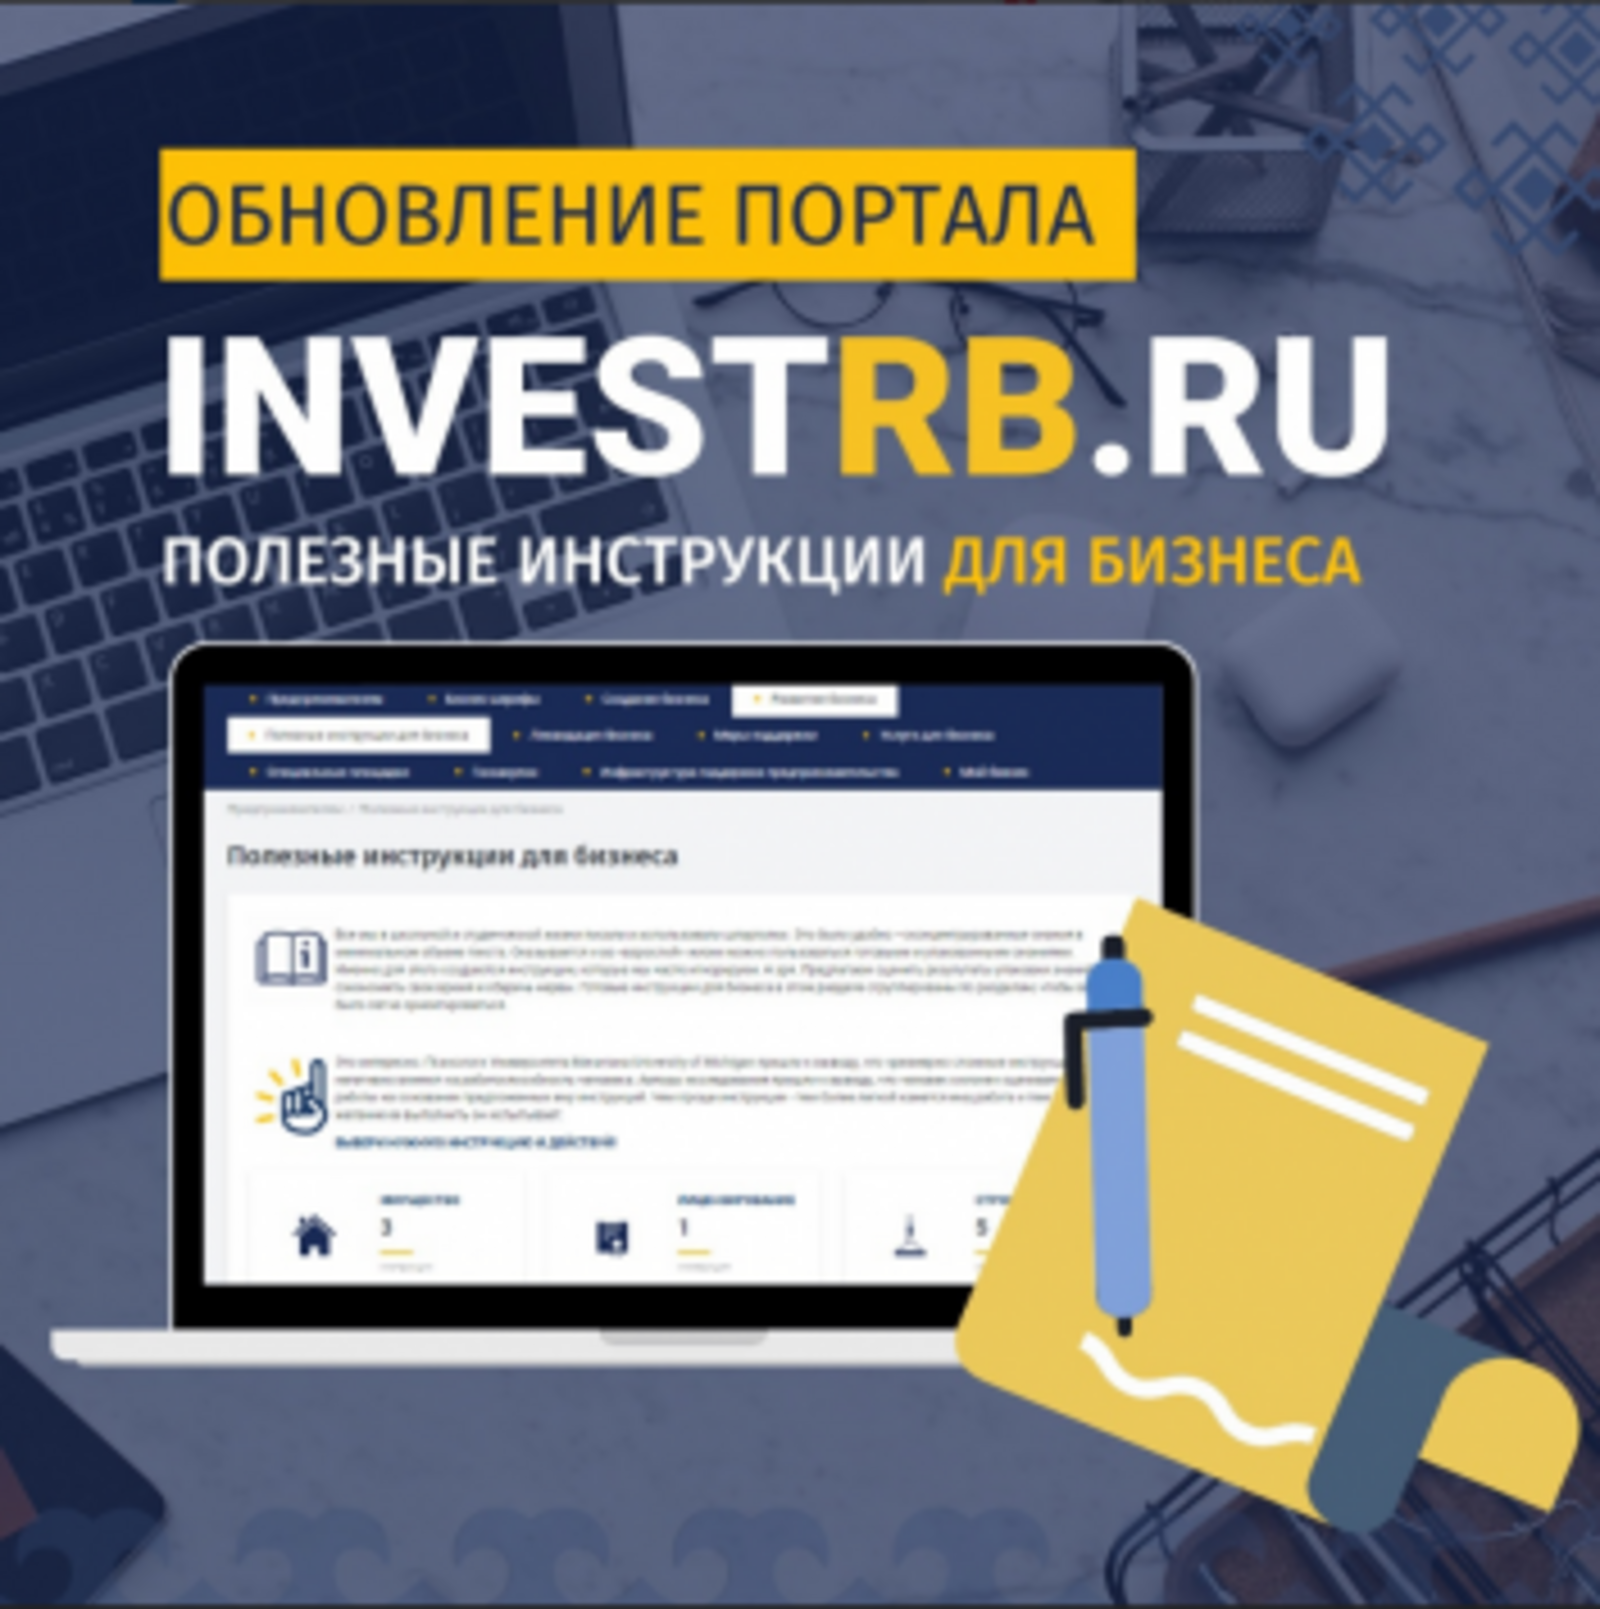 Полезные инструкции для бизнеса - на портале INVESTRB.RU